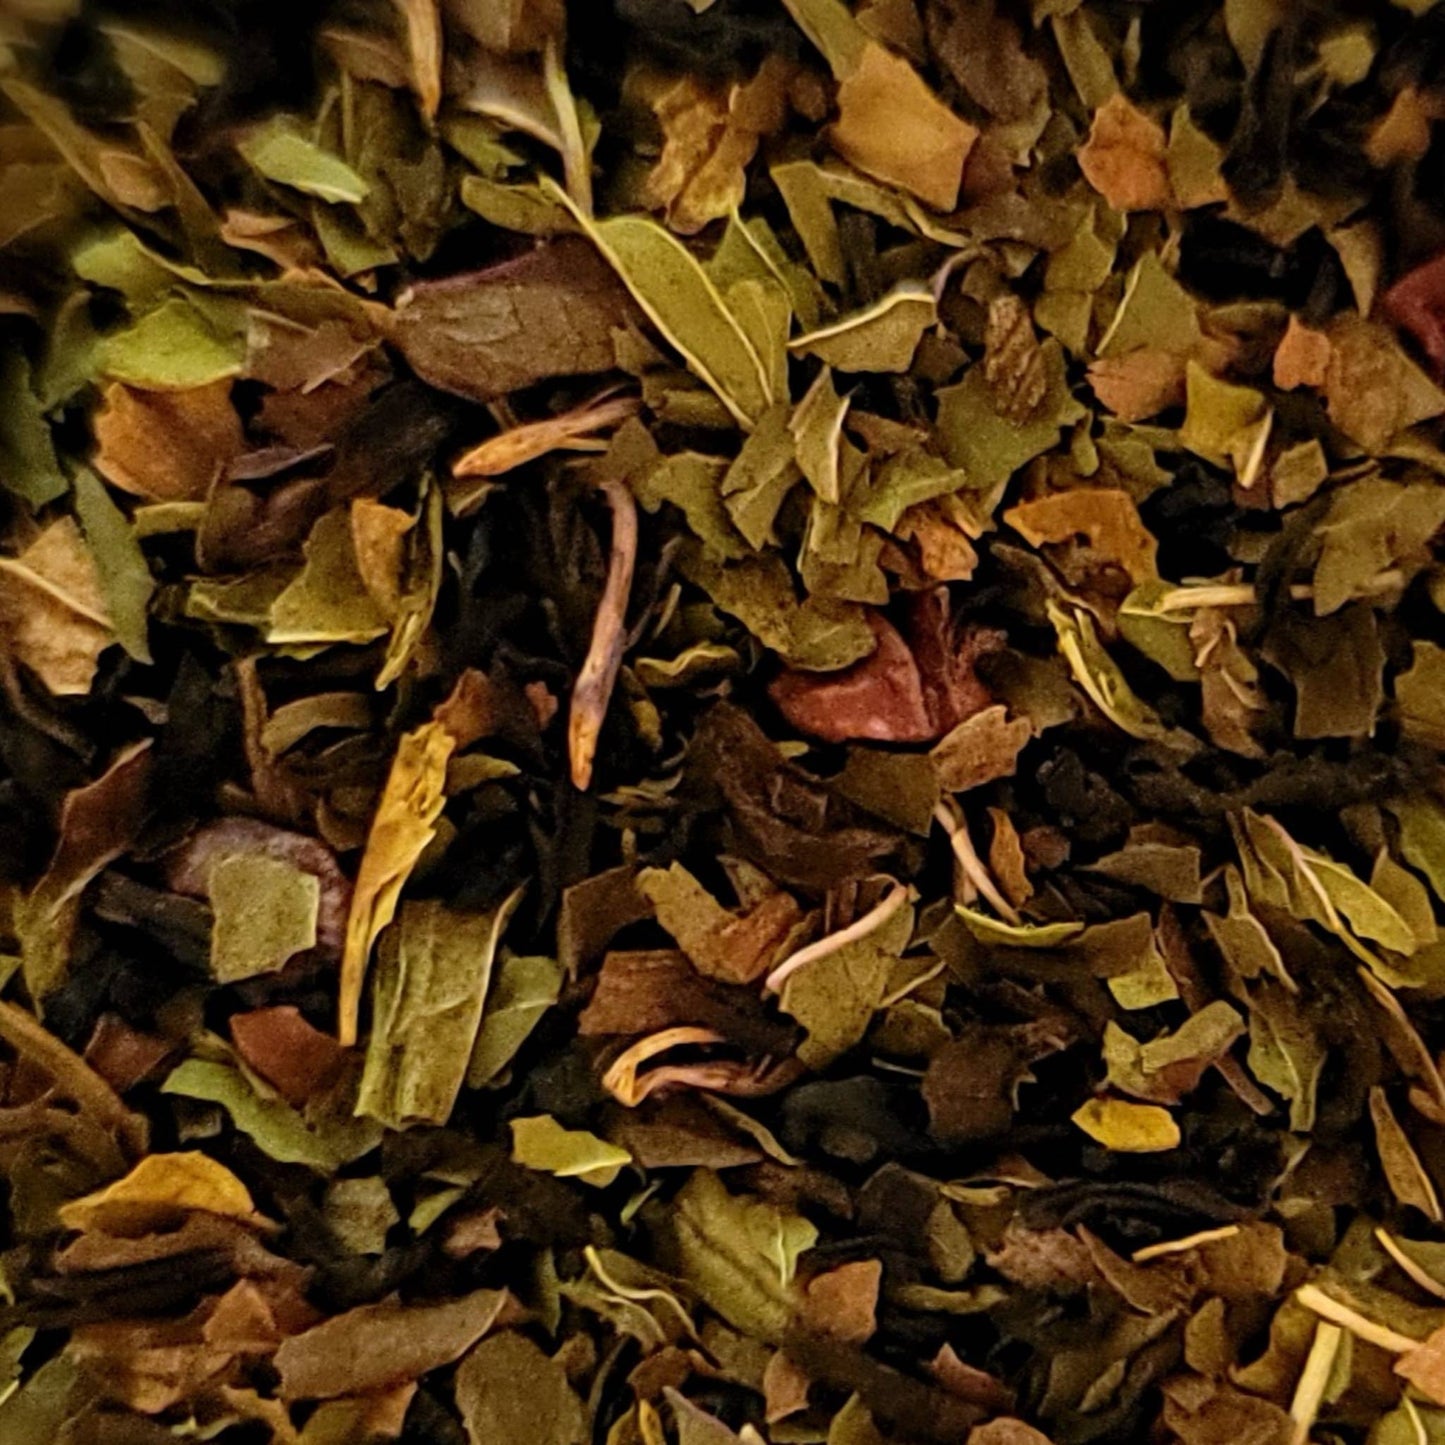 Gourmet Peppermint Patty Loose-Leaf Black Tea (1 oz or 2 oz): 1 oz